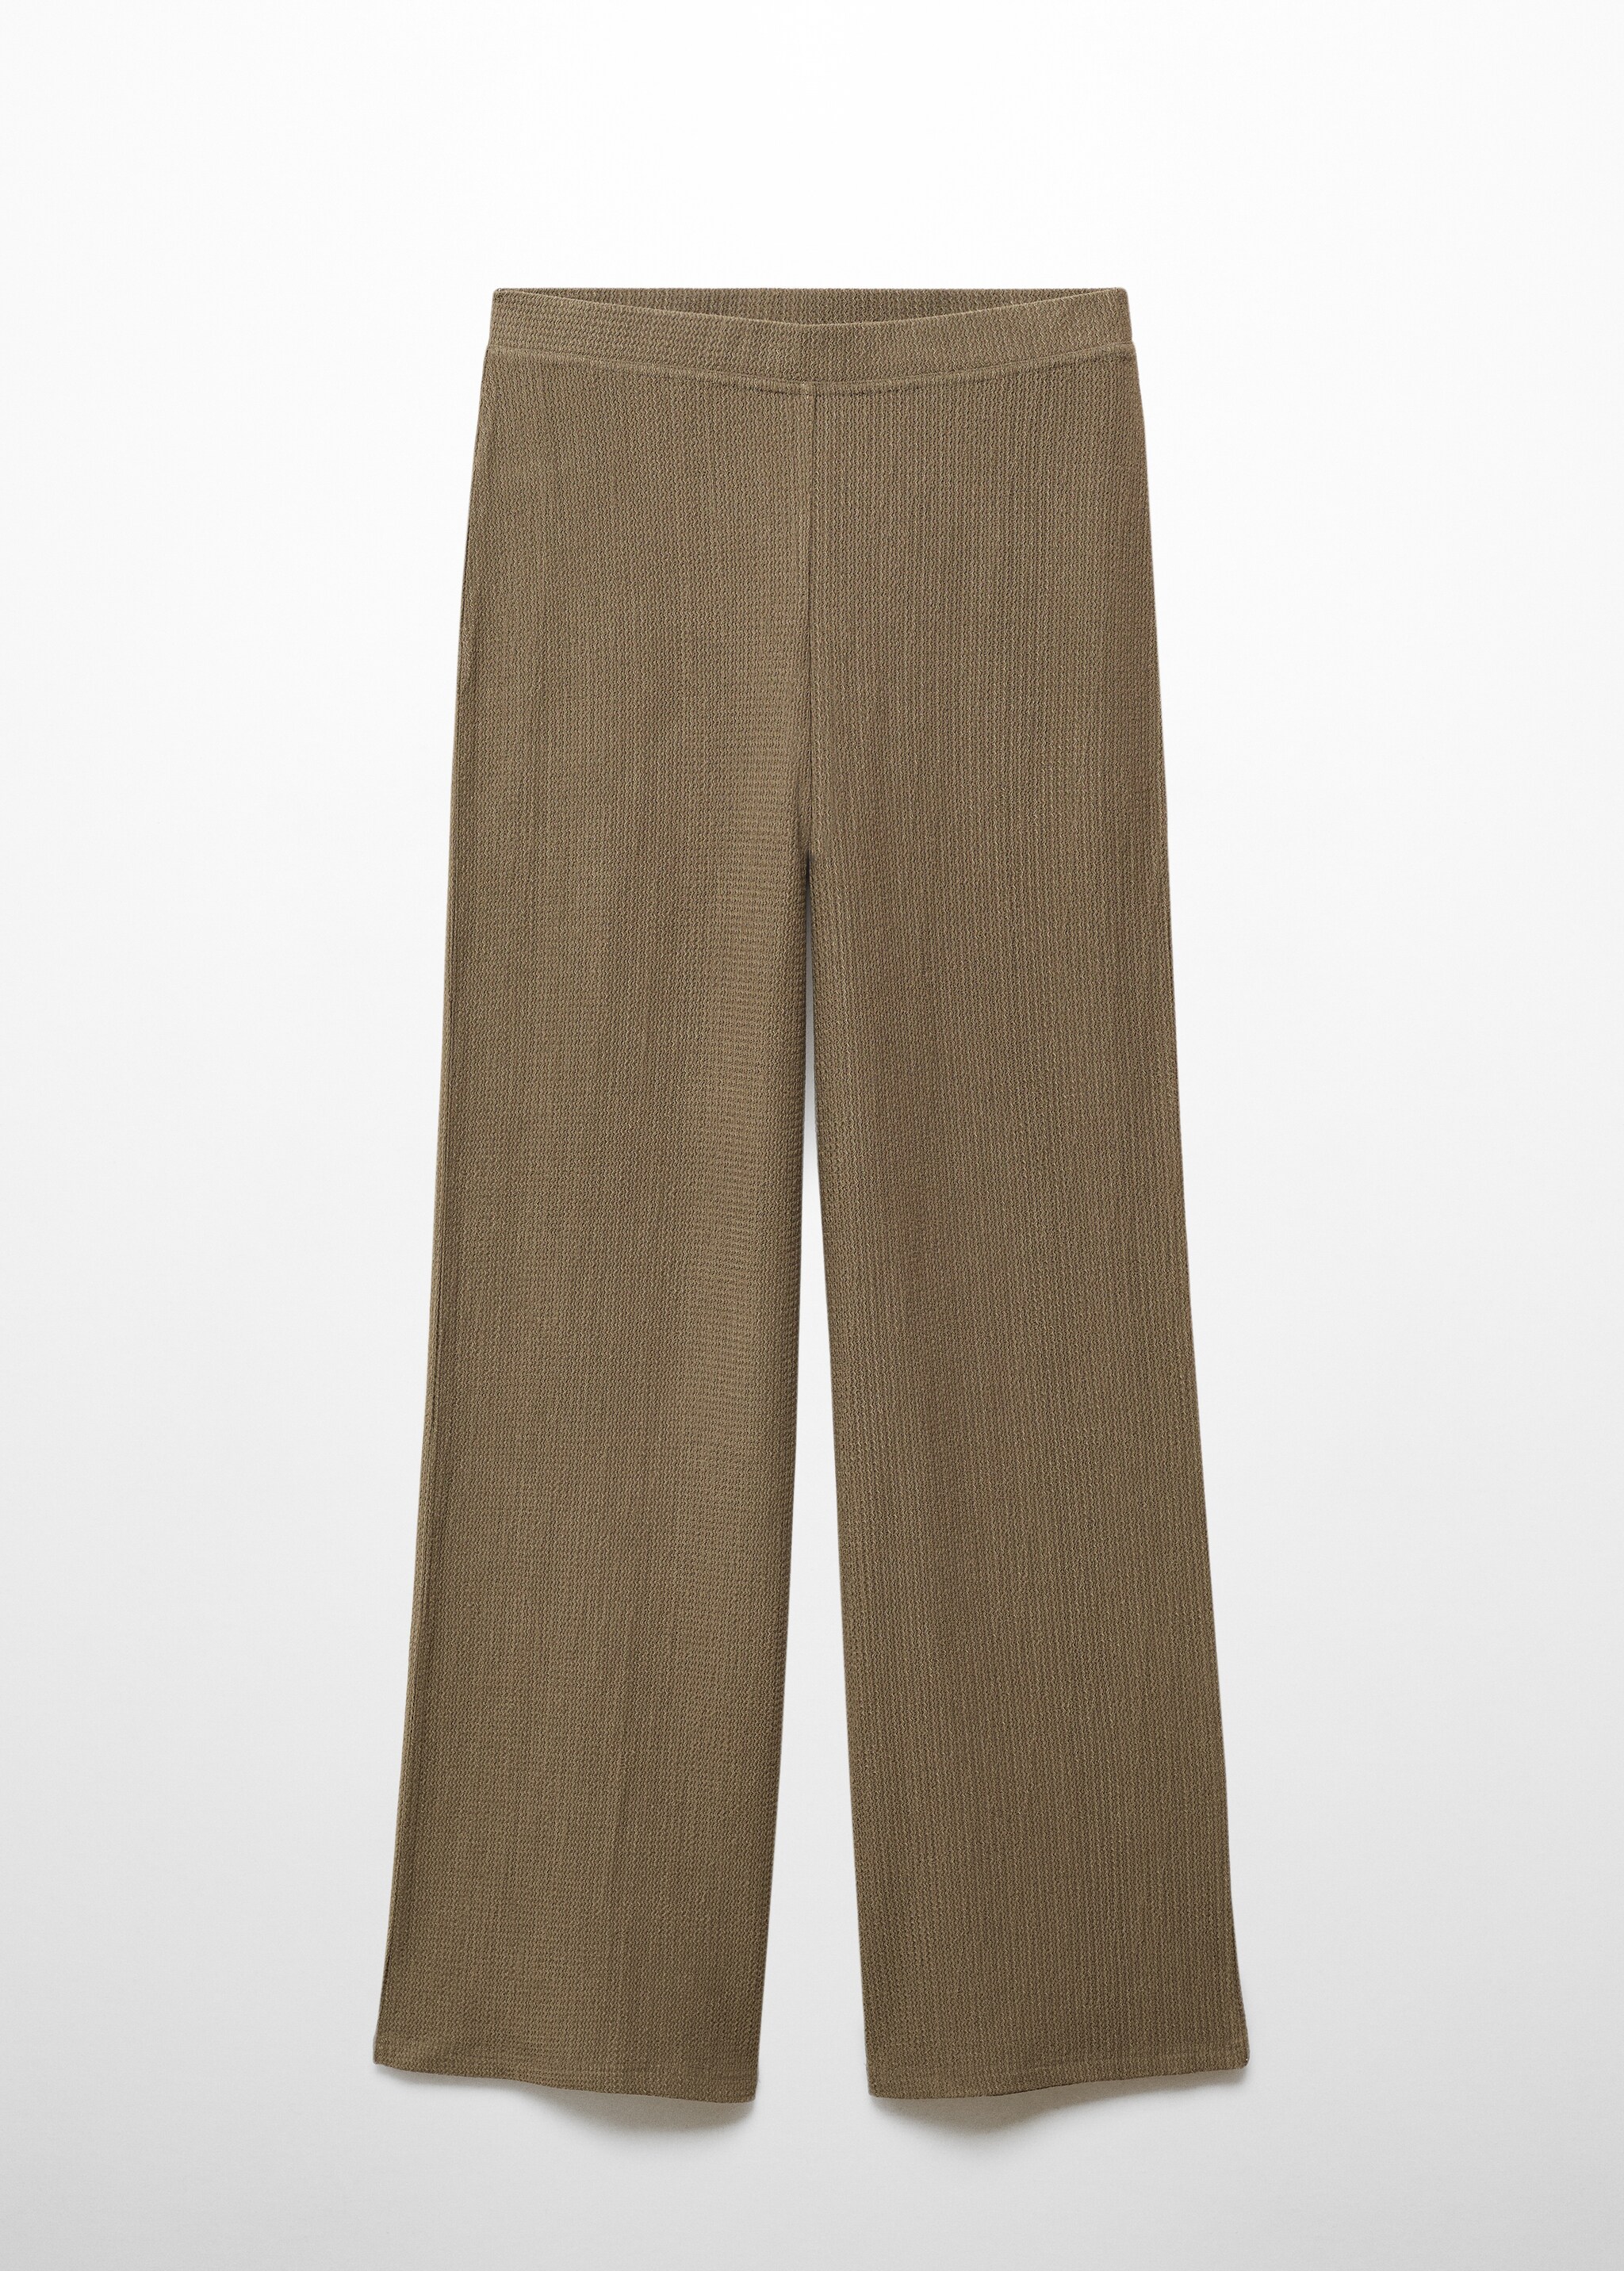 Wideleg dokuma pantolon - Modelsiz ürün